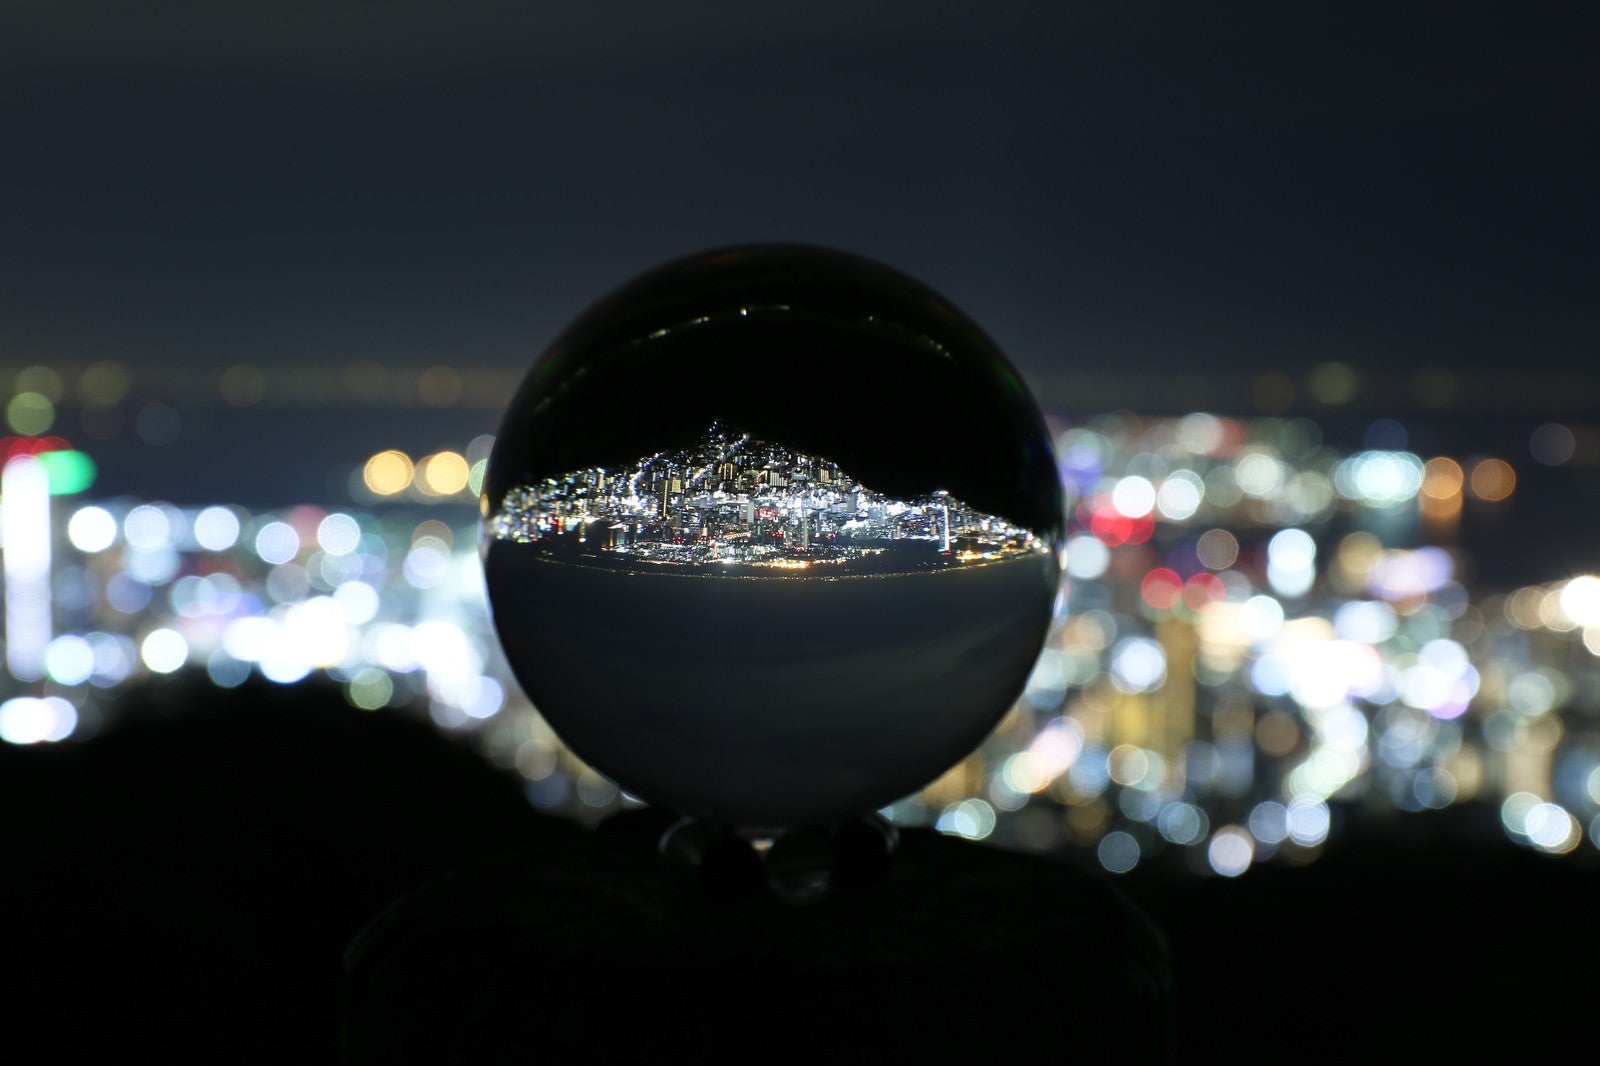 「ガラス玉に映る反転した夜景」の写真